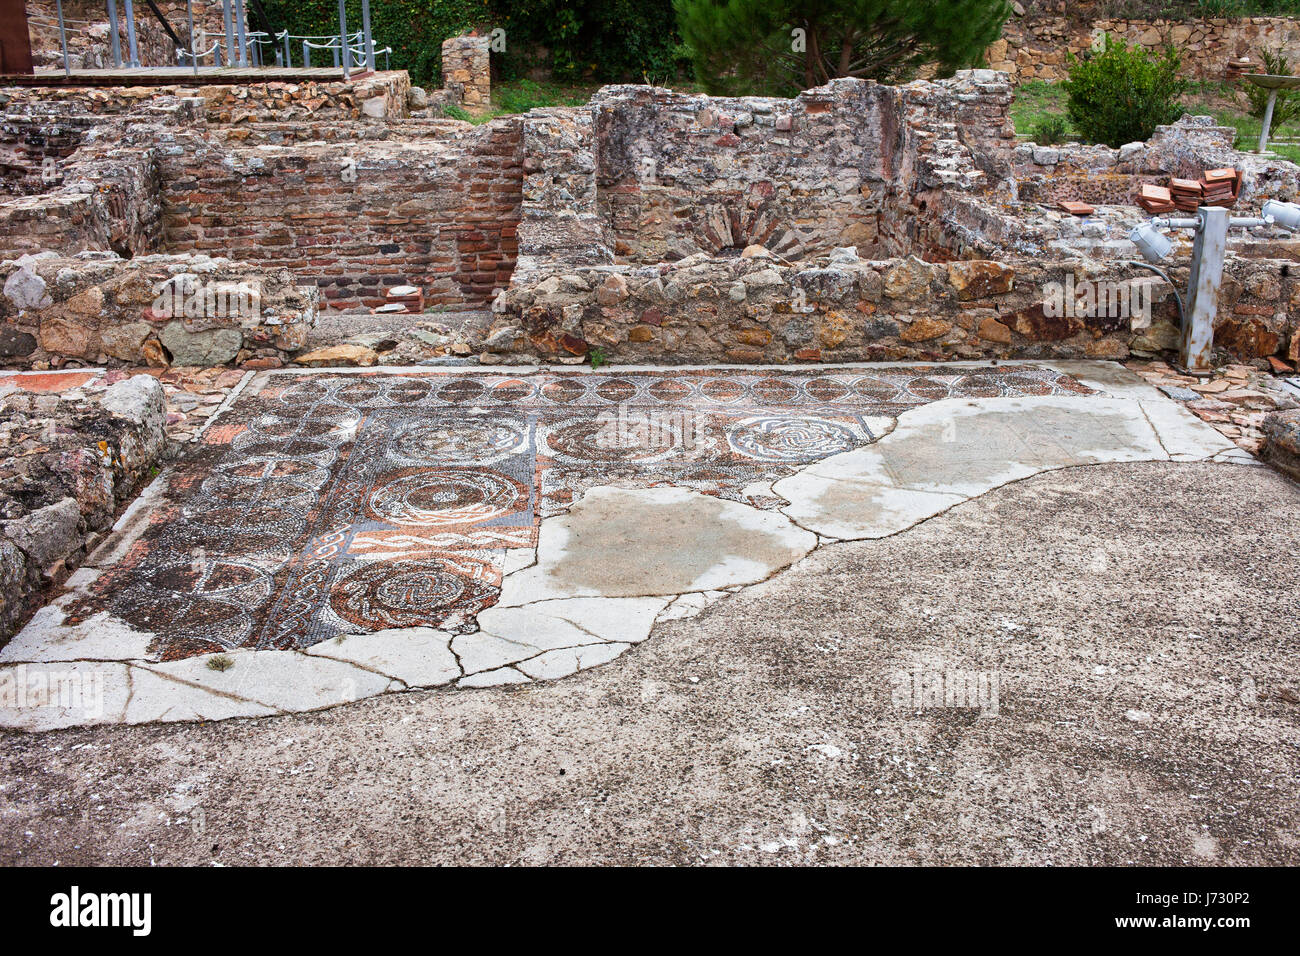 Els Ametllers antica villa romana con pavimento a mosaico rimane in Tossa de Mar città, Catalogna, Spagna, Europa Foto Stock